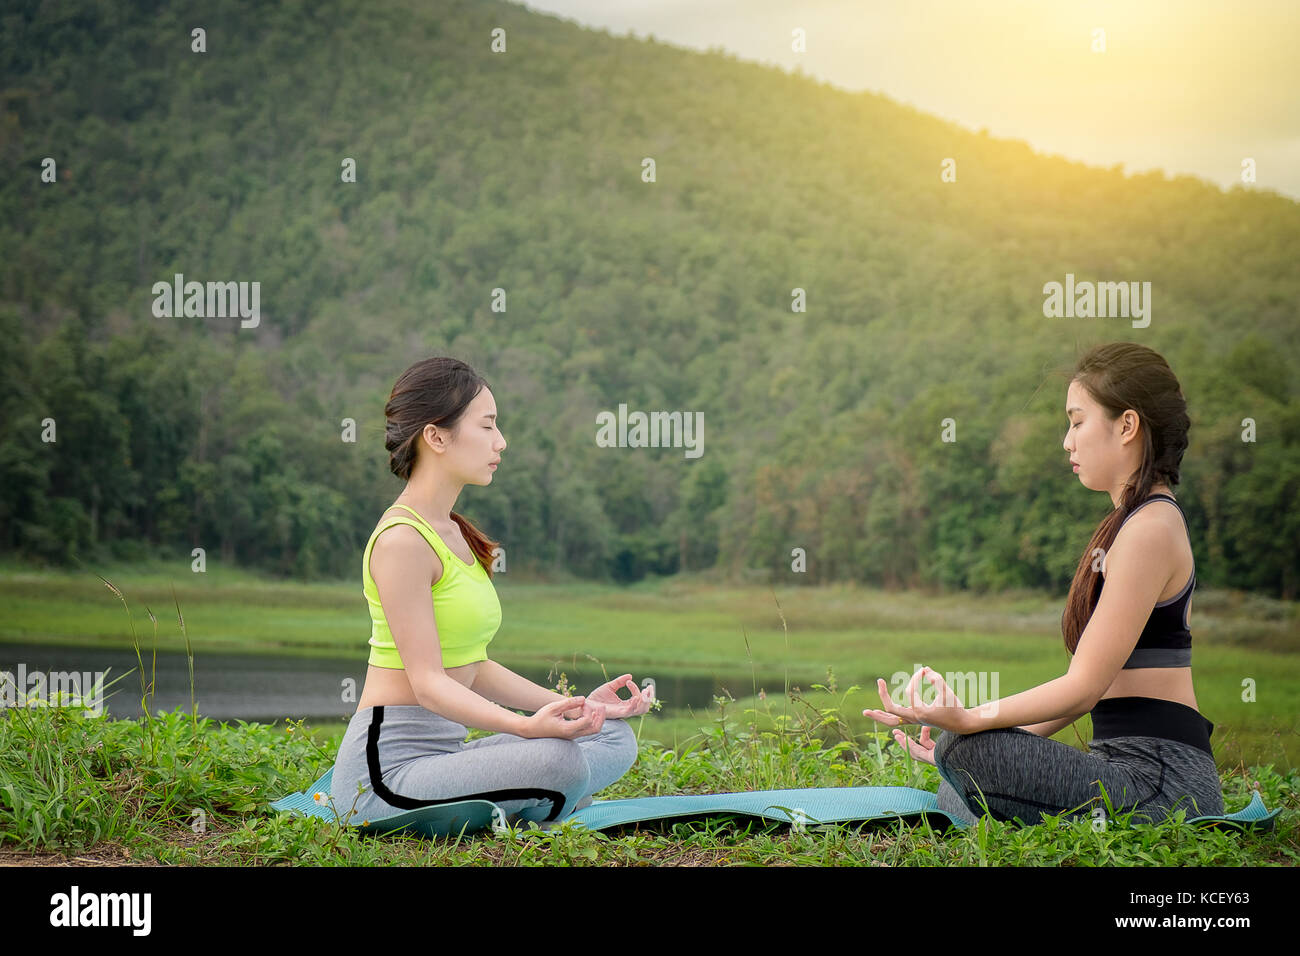 Zwei junge womans sitzen Yoga in der Nähe des Flusses. Konzept der gesunden Lebensstil und Entspannung. Stockfoto